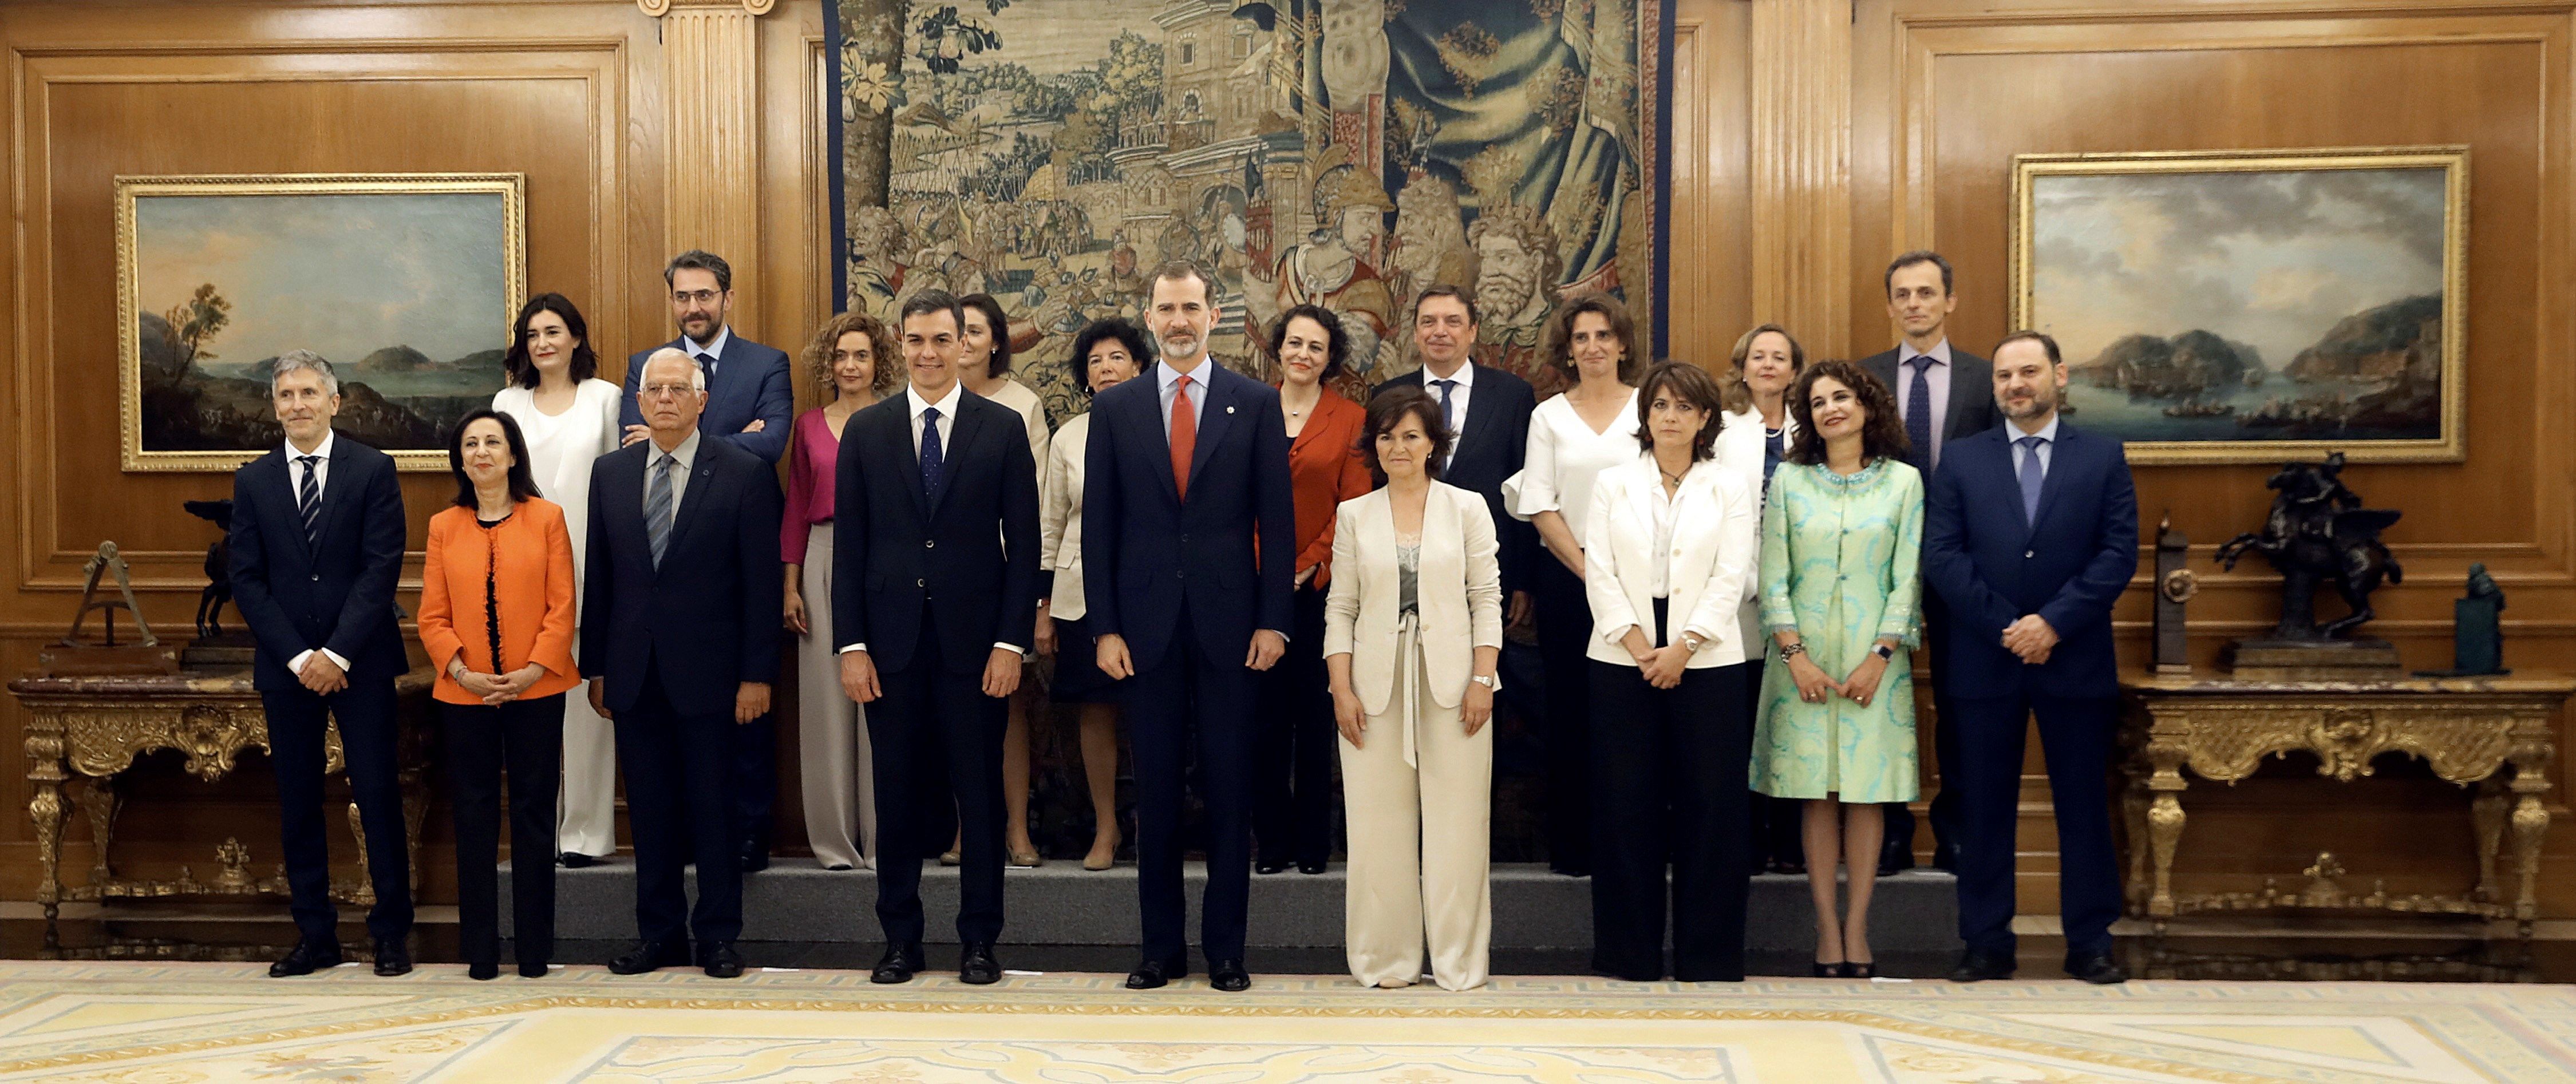 El Gobierno de Pedro Sánchez toma posesión luego de que Mariano Rajoy fuera removido de su cargo debido a una moción de censura. 